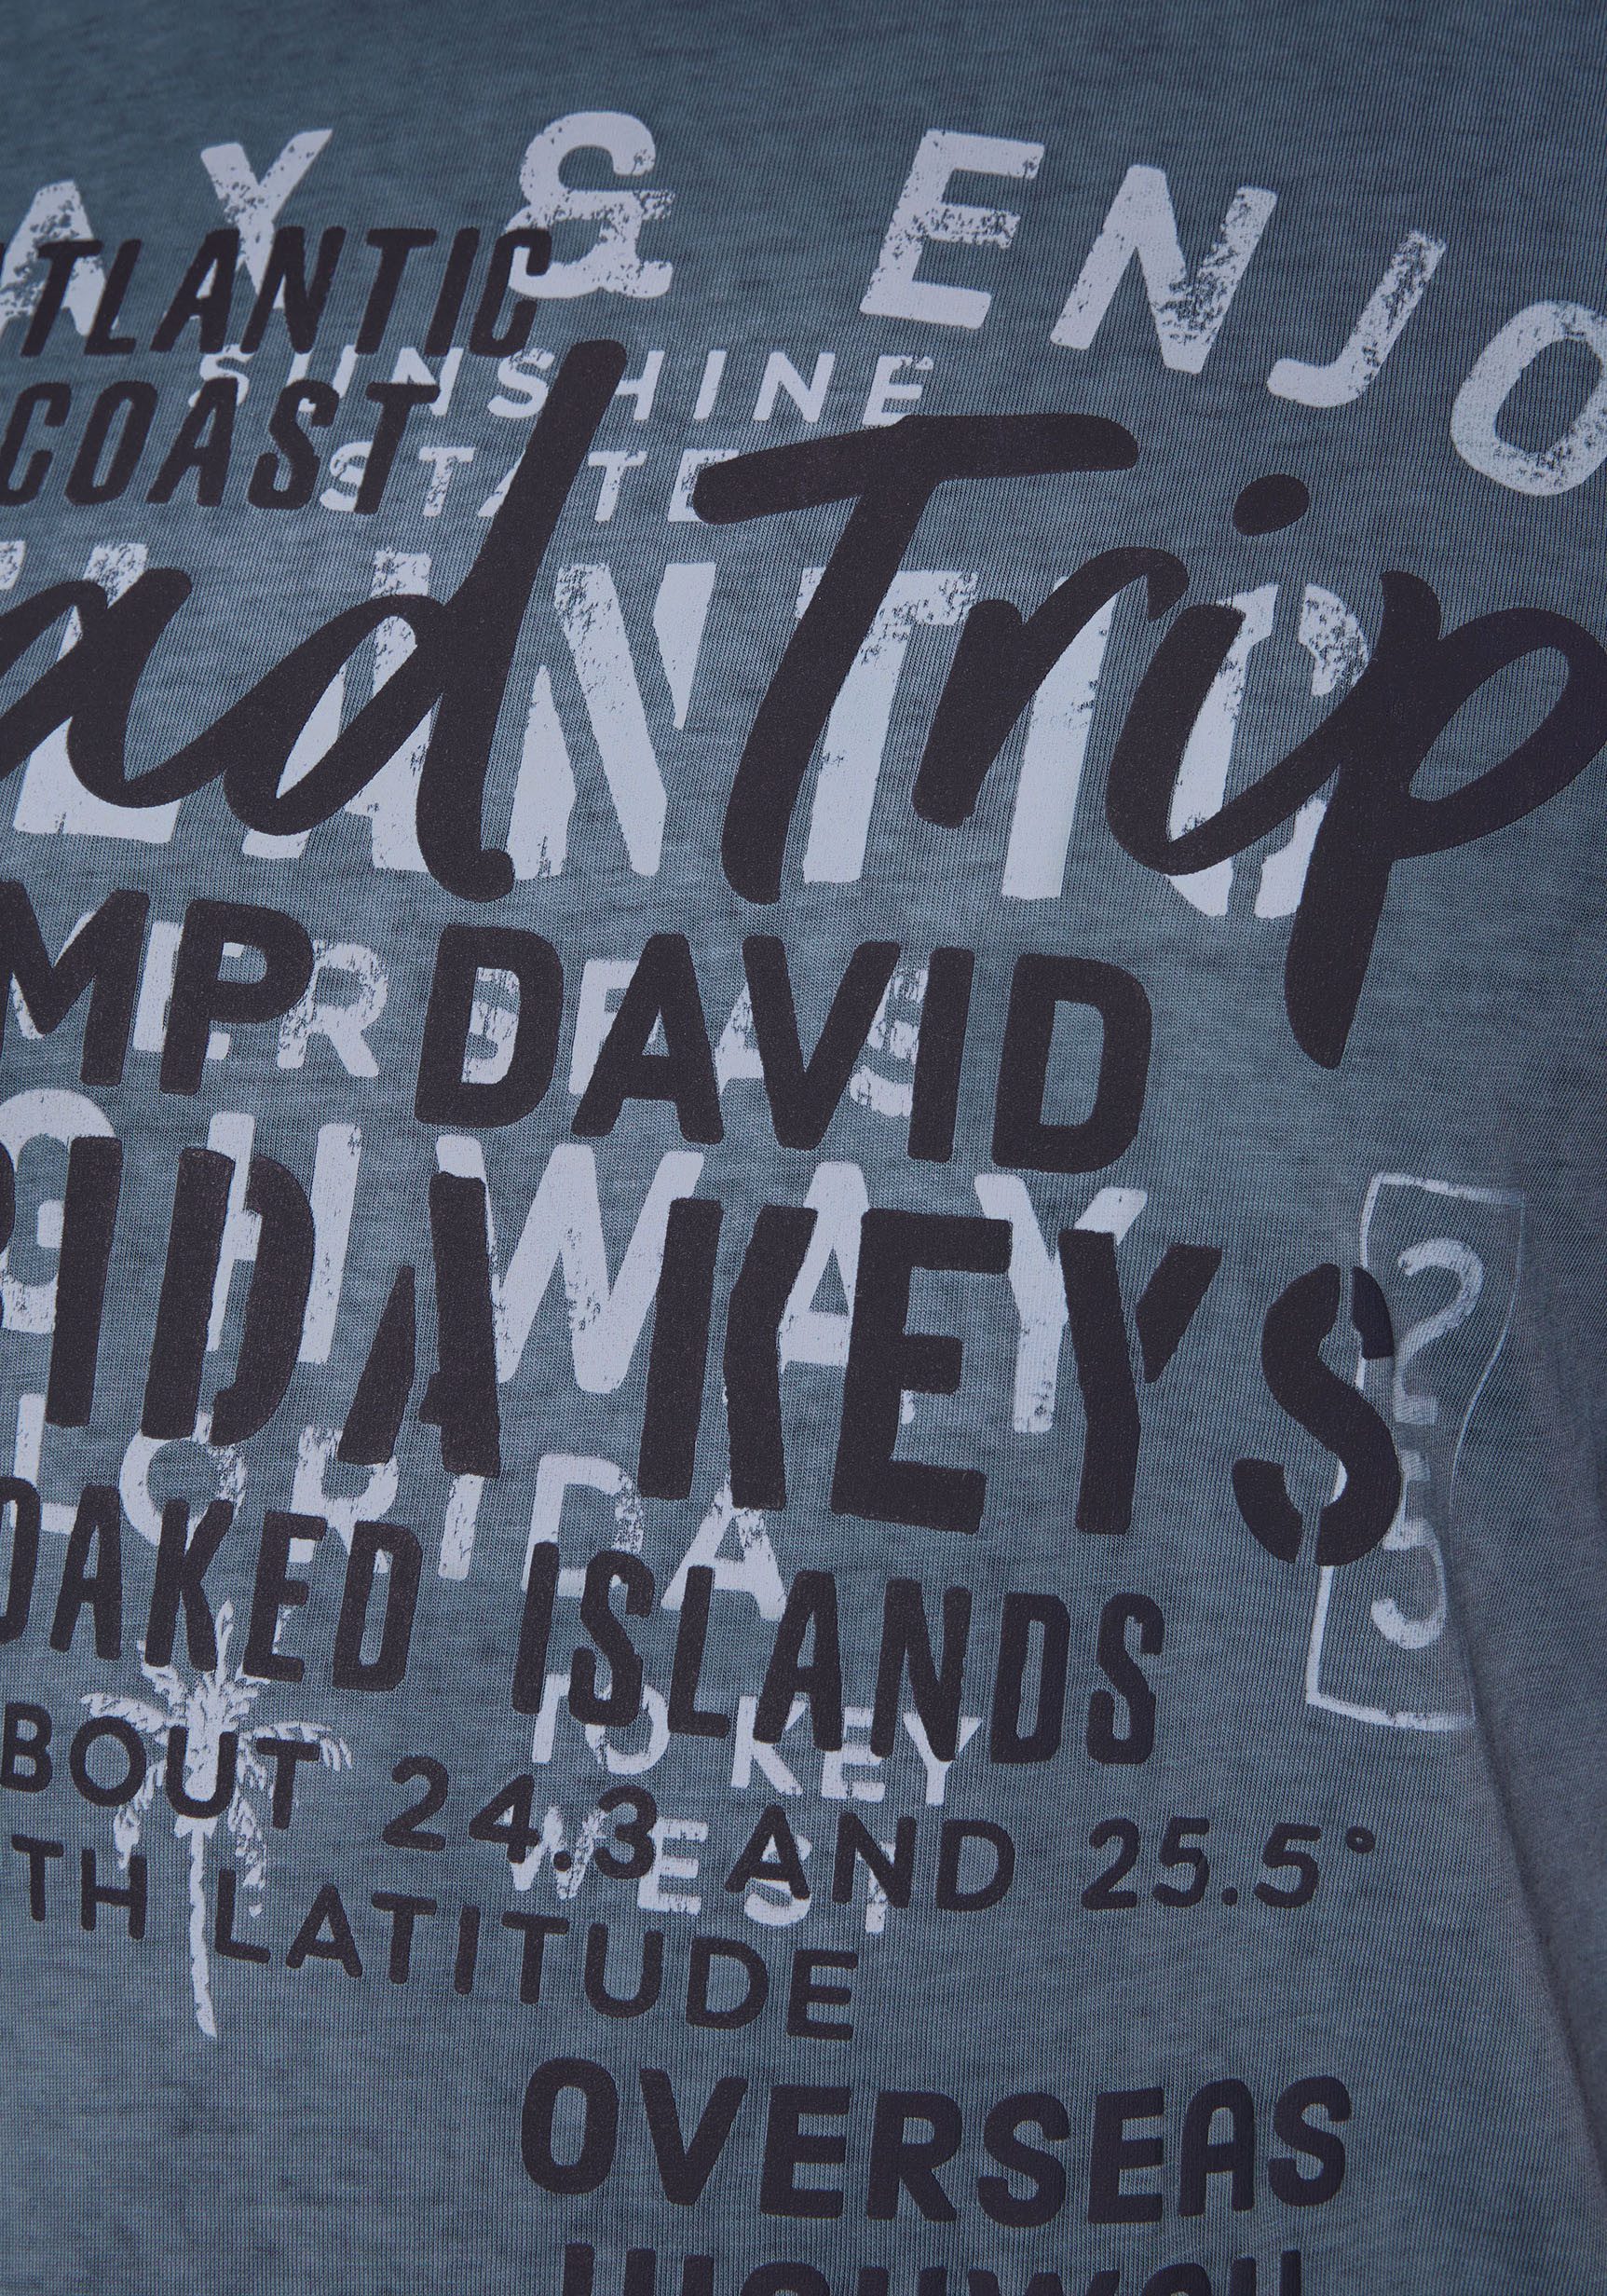 CAMP DAVID T-shirt